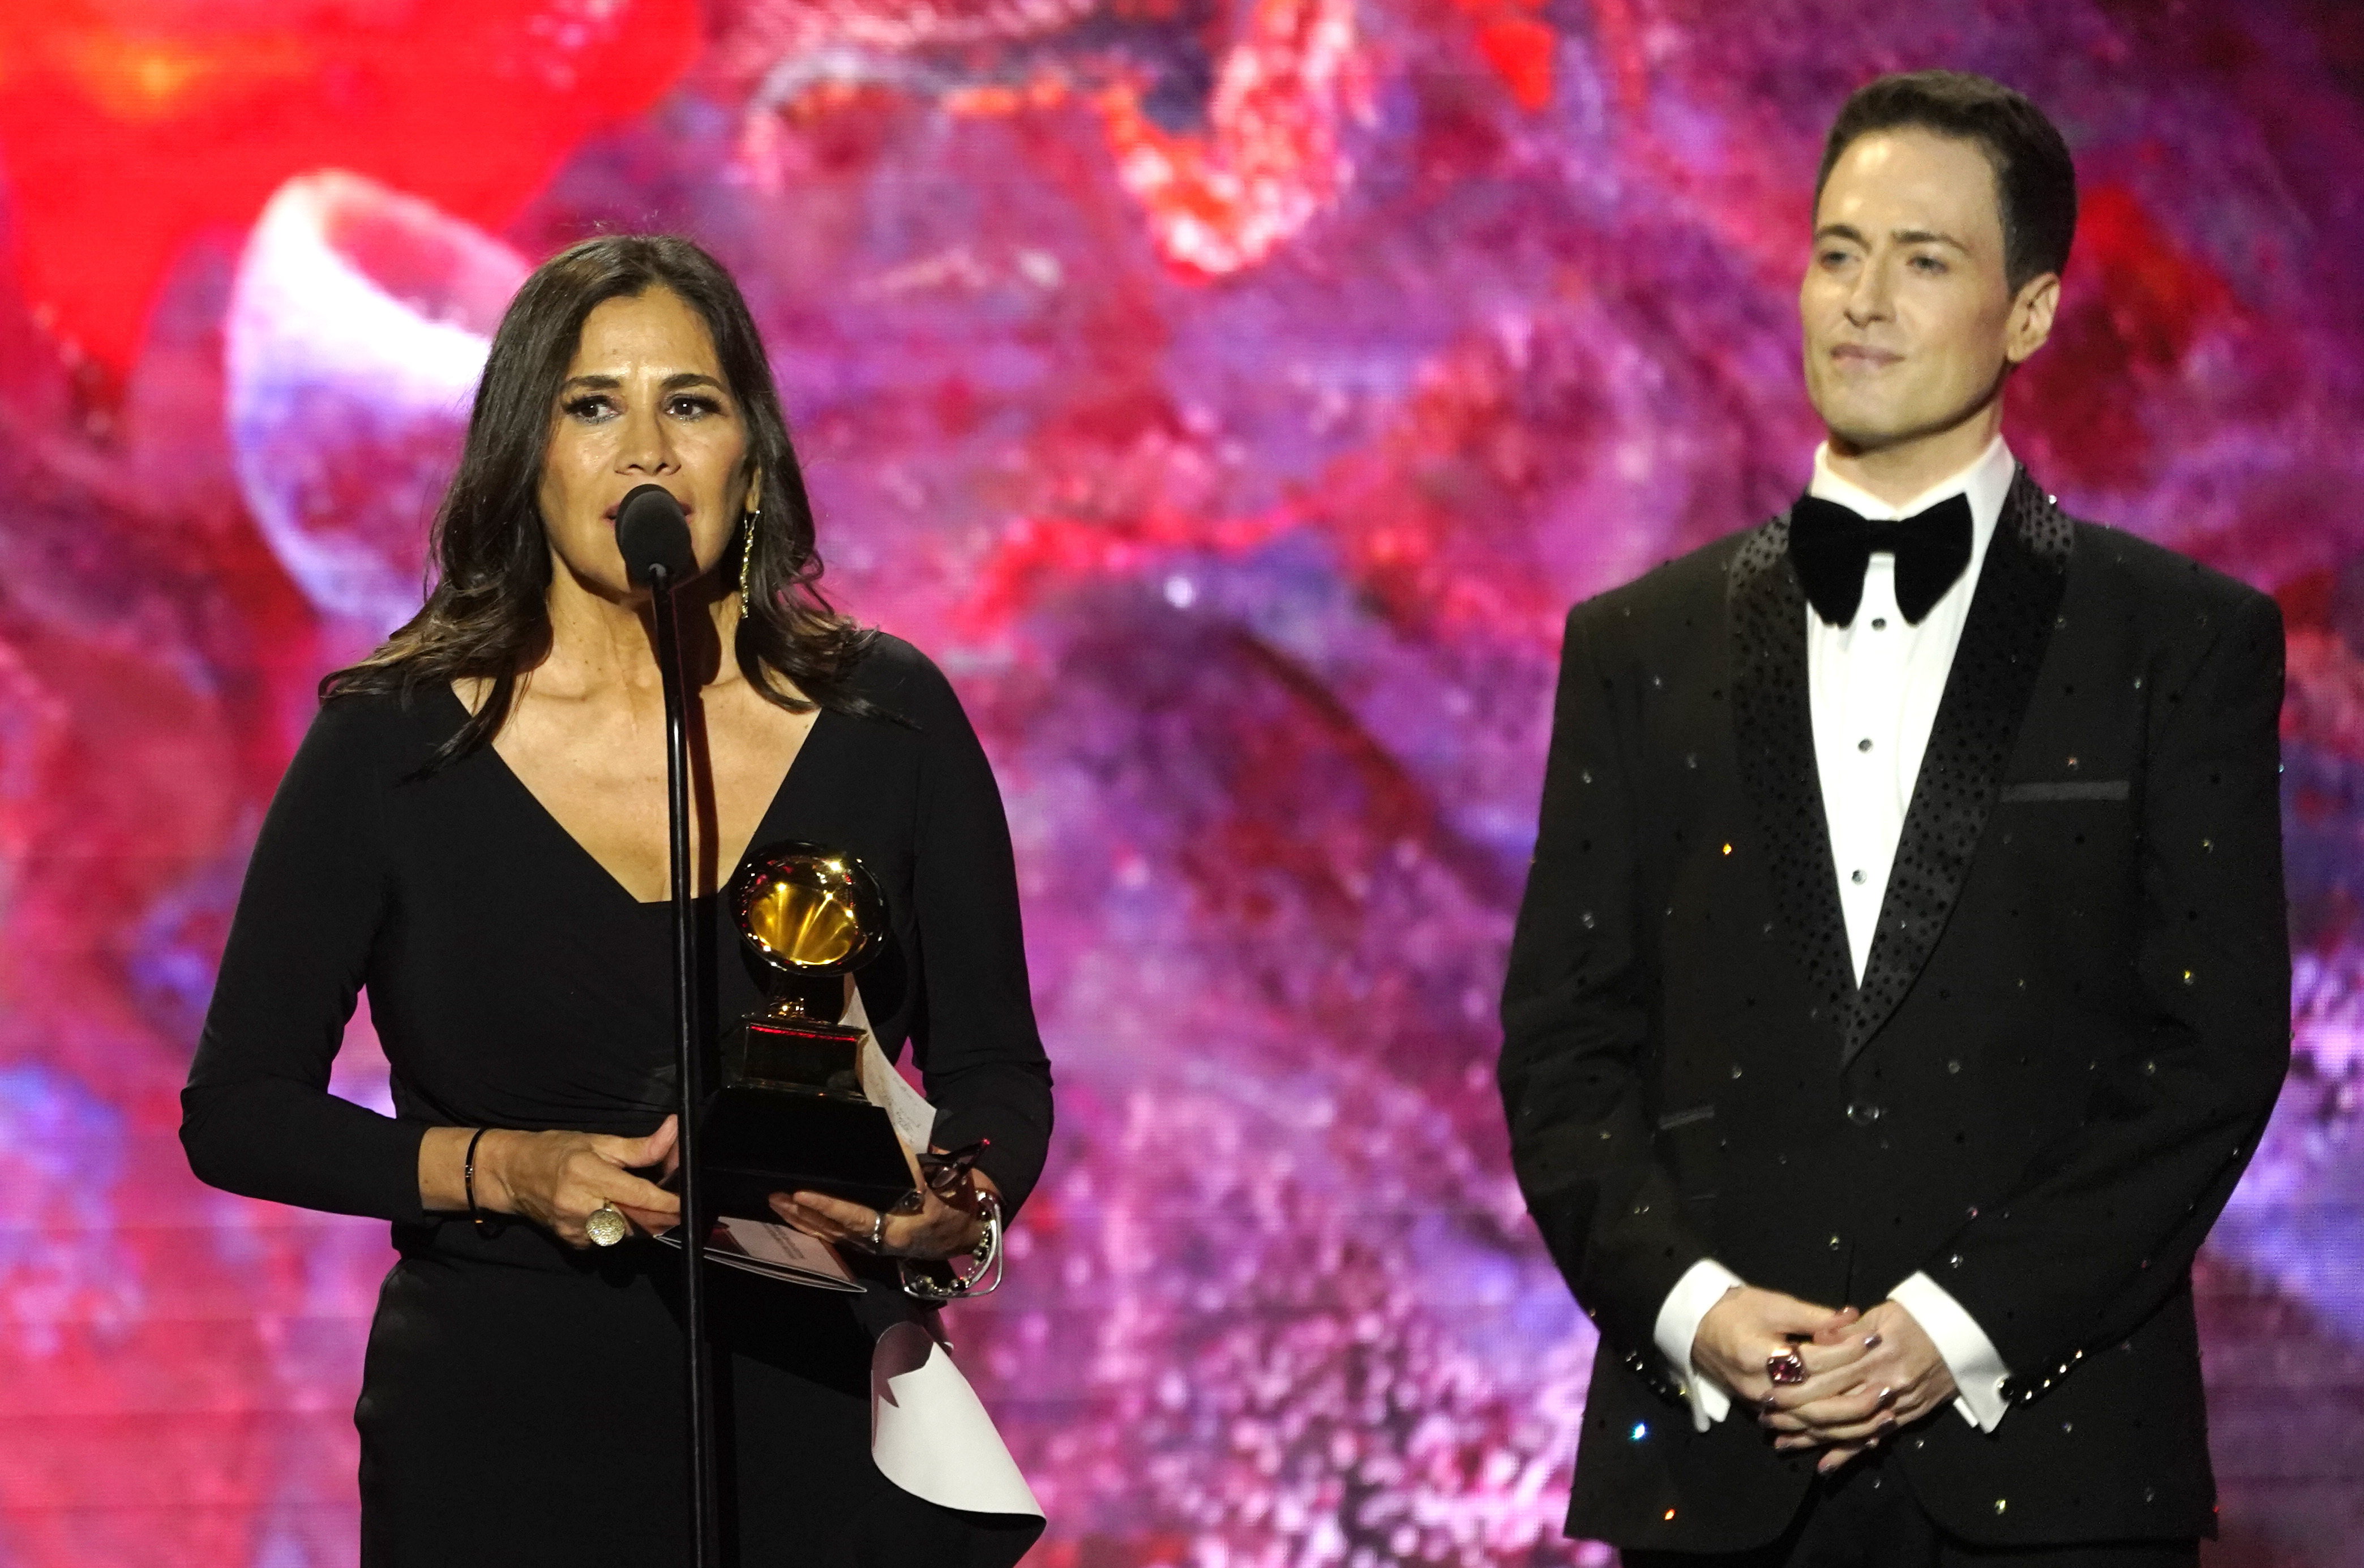 Germaine Franco, izquierda, recibe el premio a mejor banda sonora para un medio audiovisual por "Encanto" en la 65a entrega anual del Grammy el domingo 5 de febrero de 2023, en Los Angeles. A la derecha se encuentra el maestro de ceremonias Randy Rainbow. (Foto AP/Chris Pizzello)